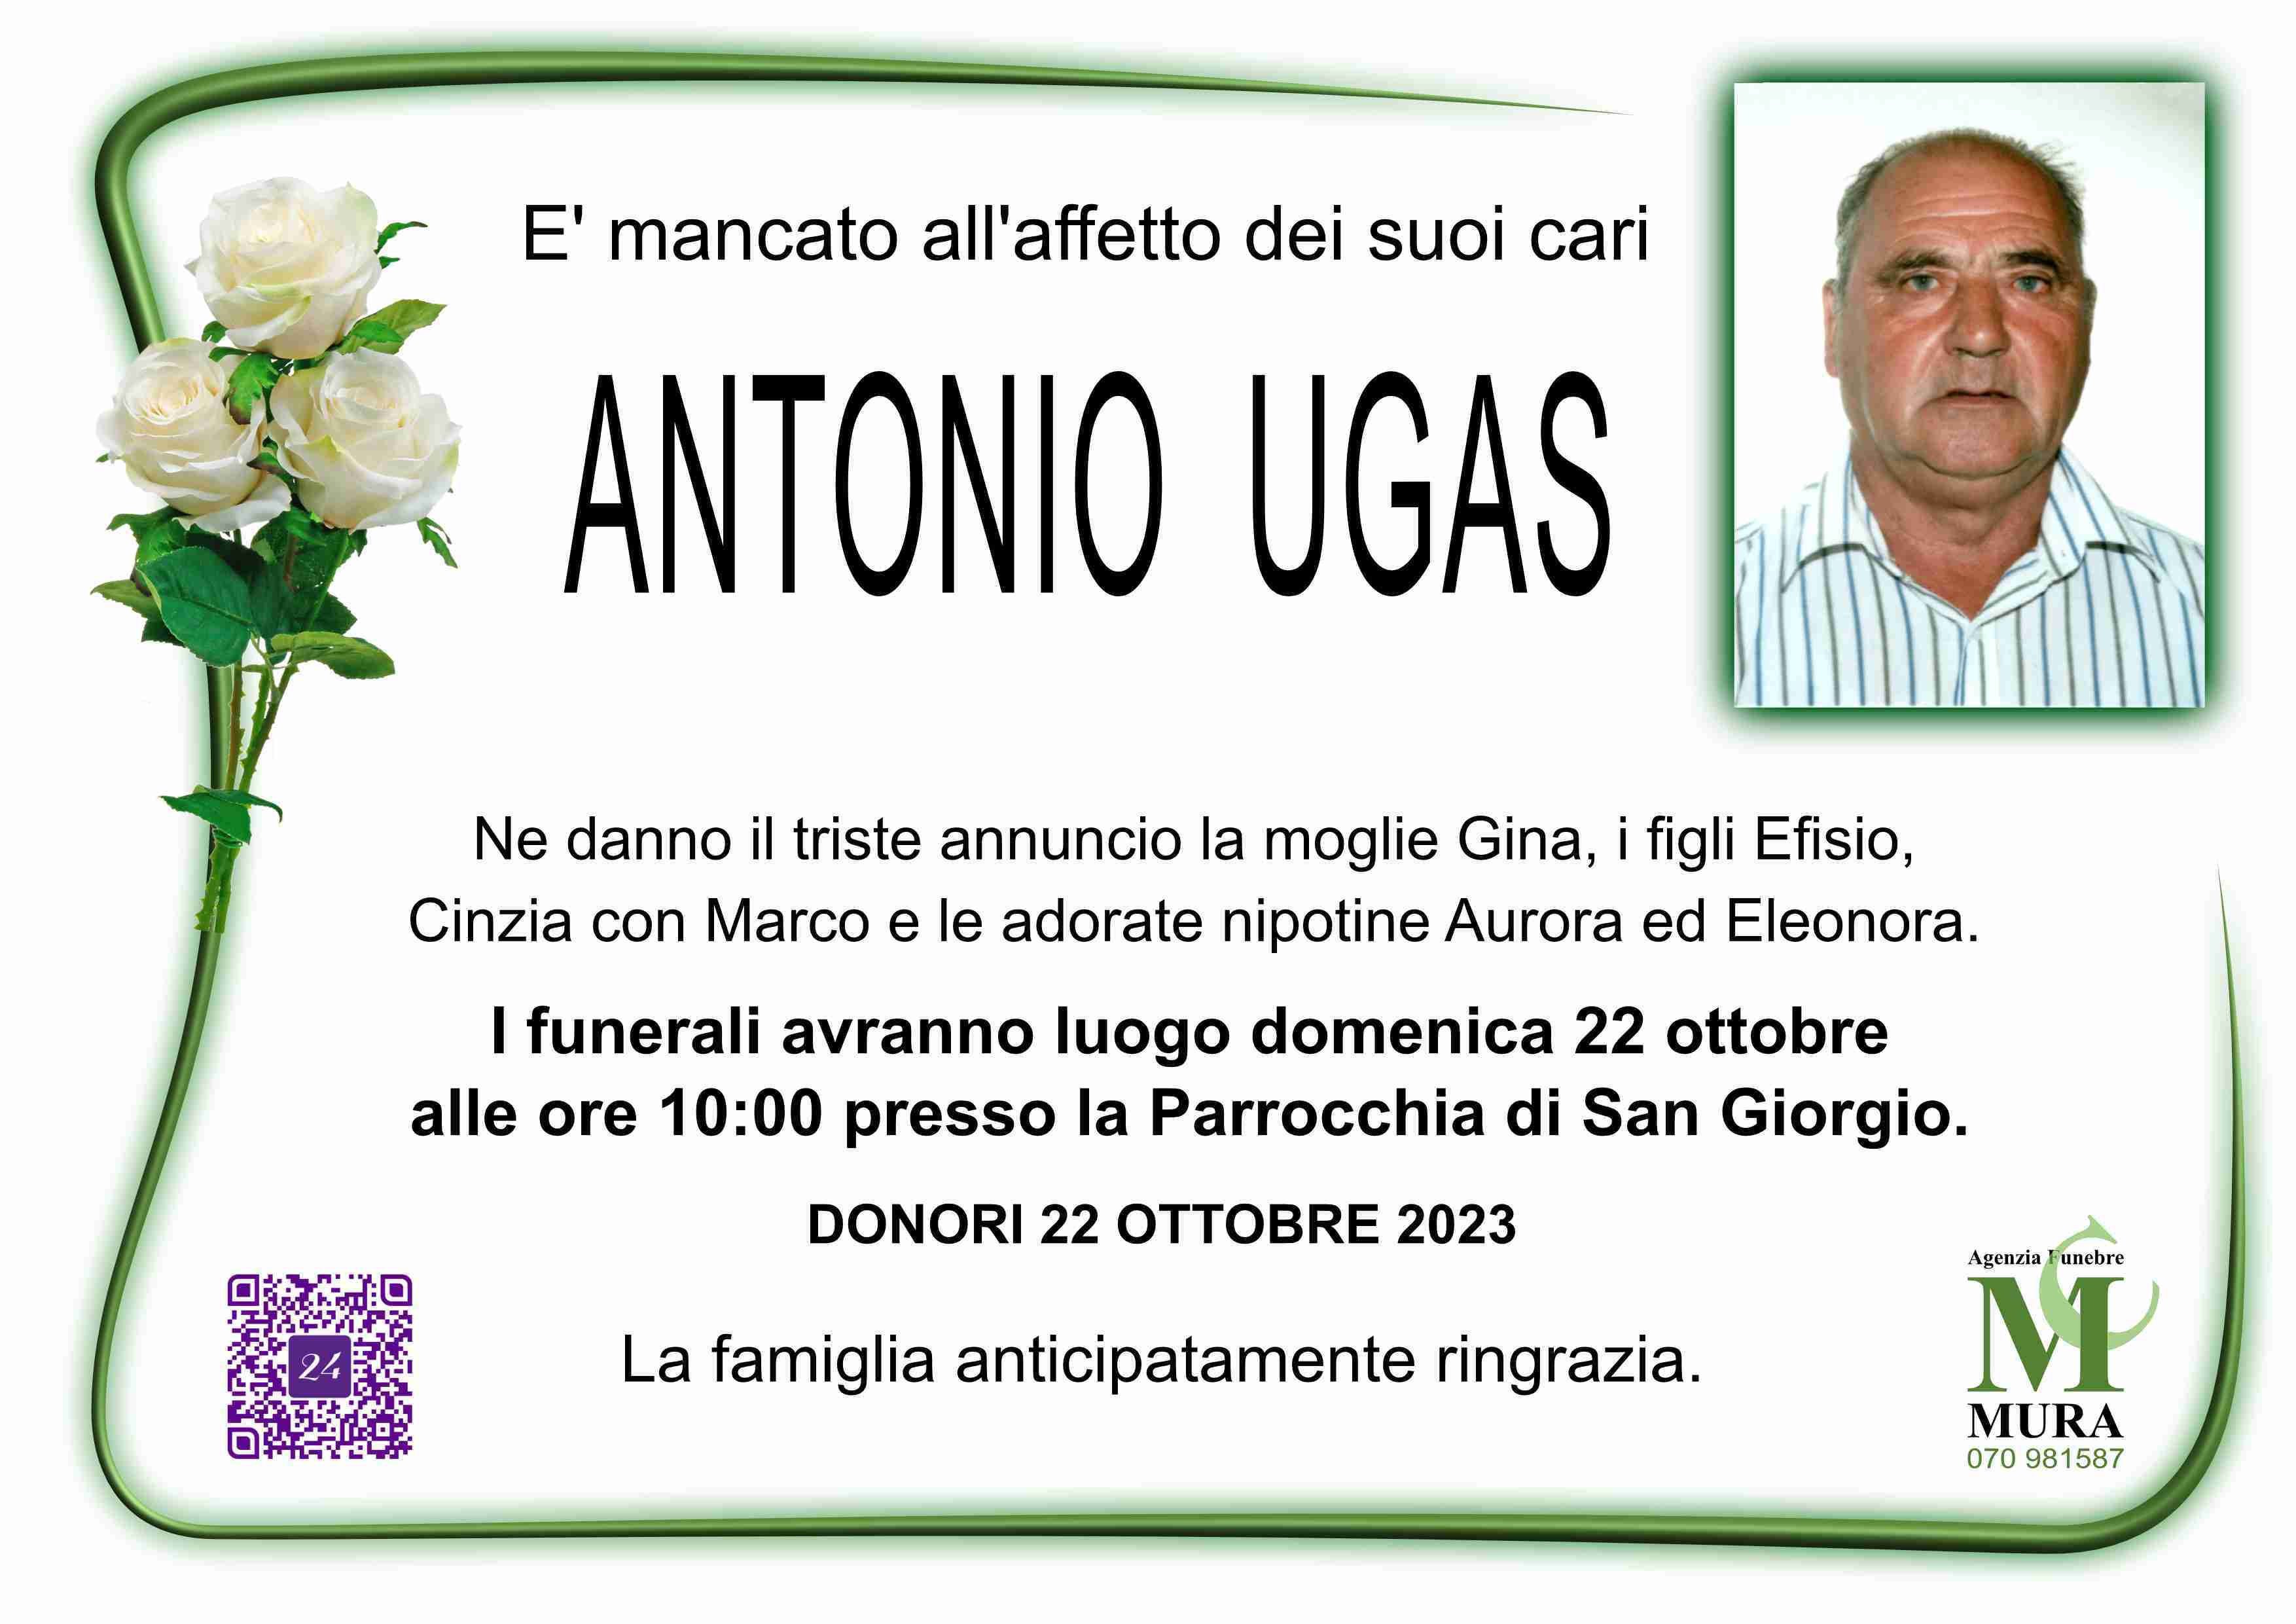 Antonio Ugas